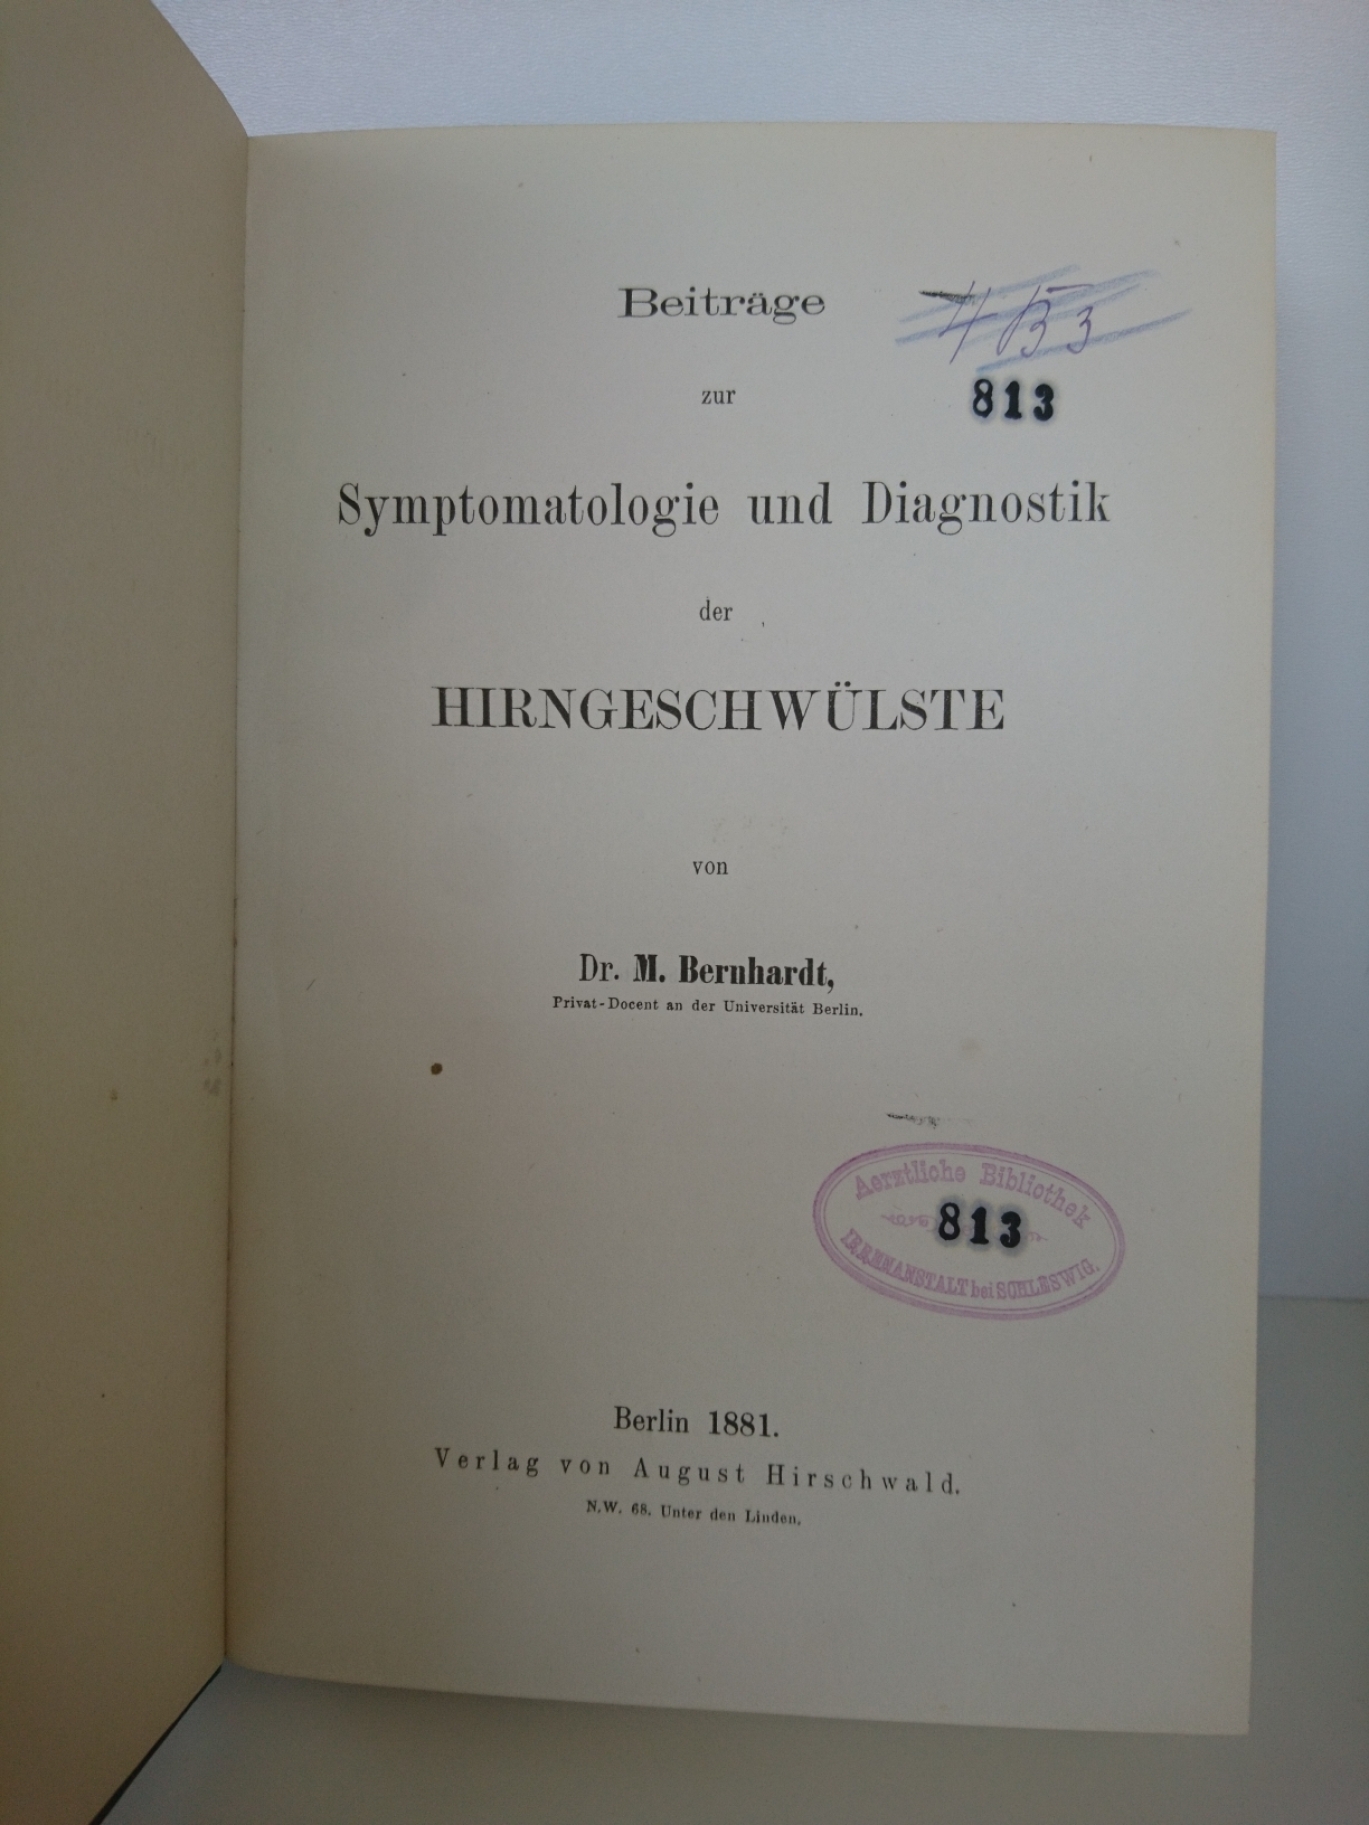 Bernhardt, Dr. M.: Beiträge zur Symptomatologie und Diagnostik der Hirngeschwülste